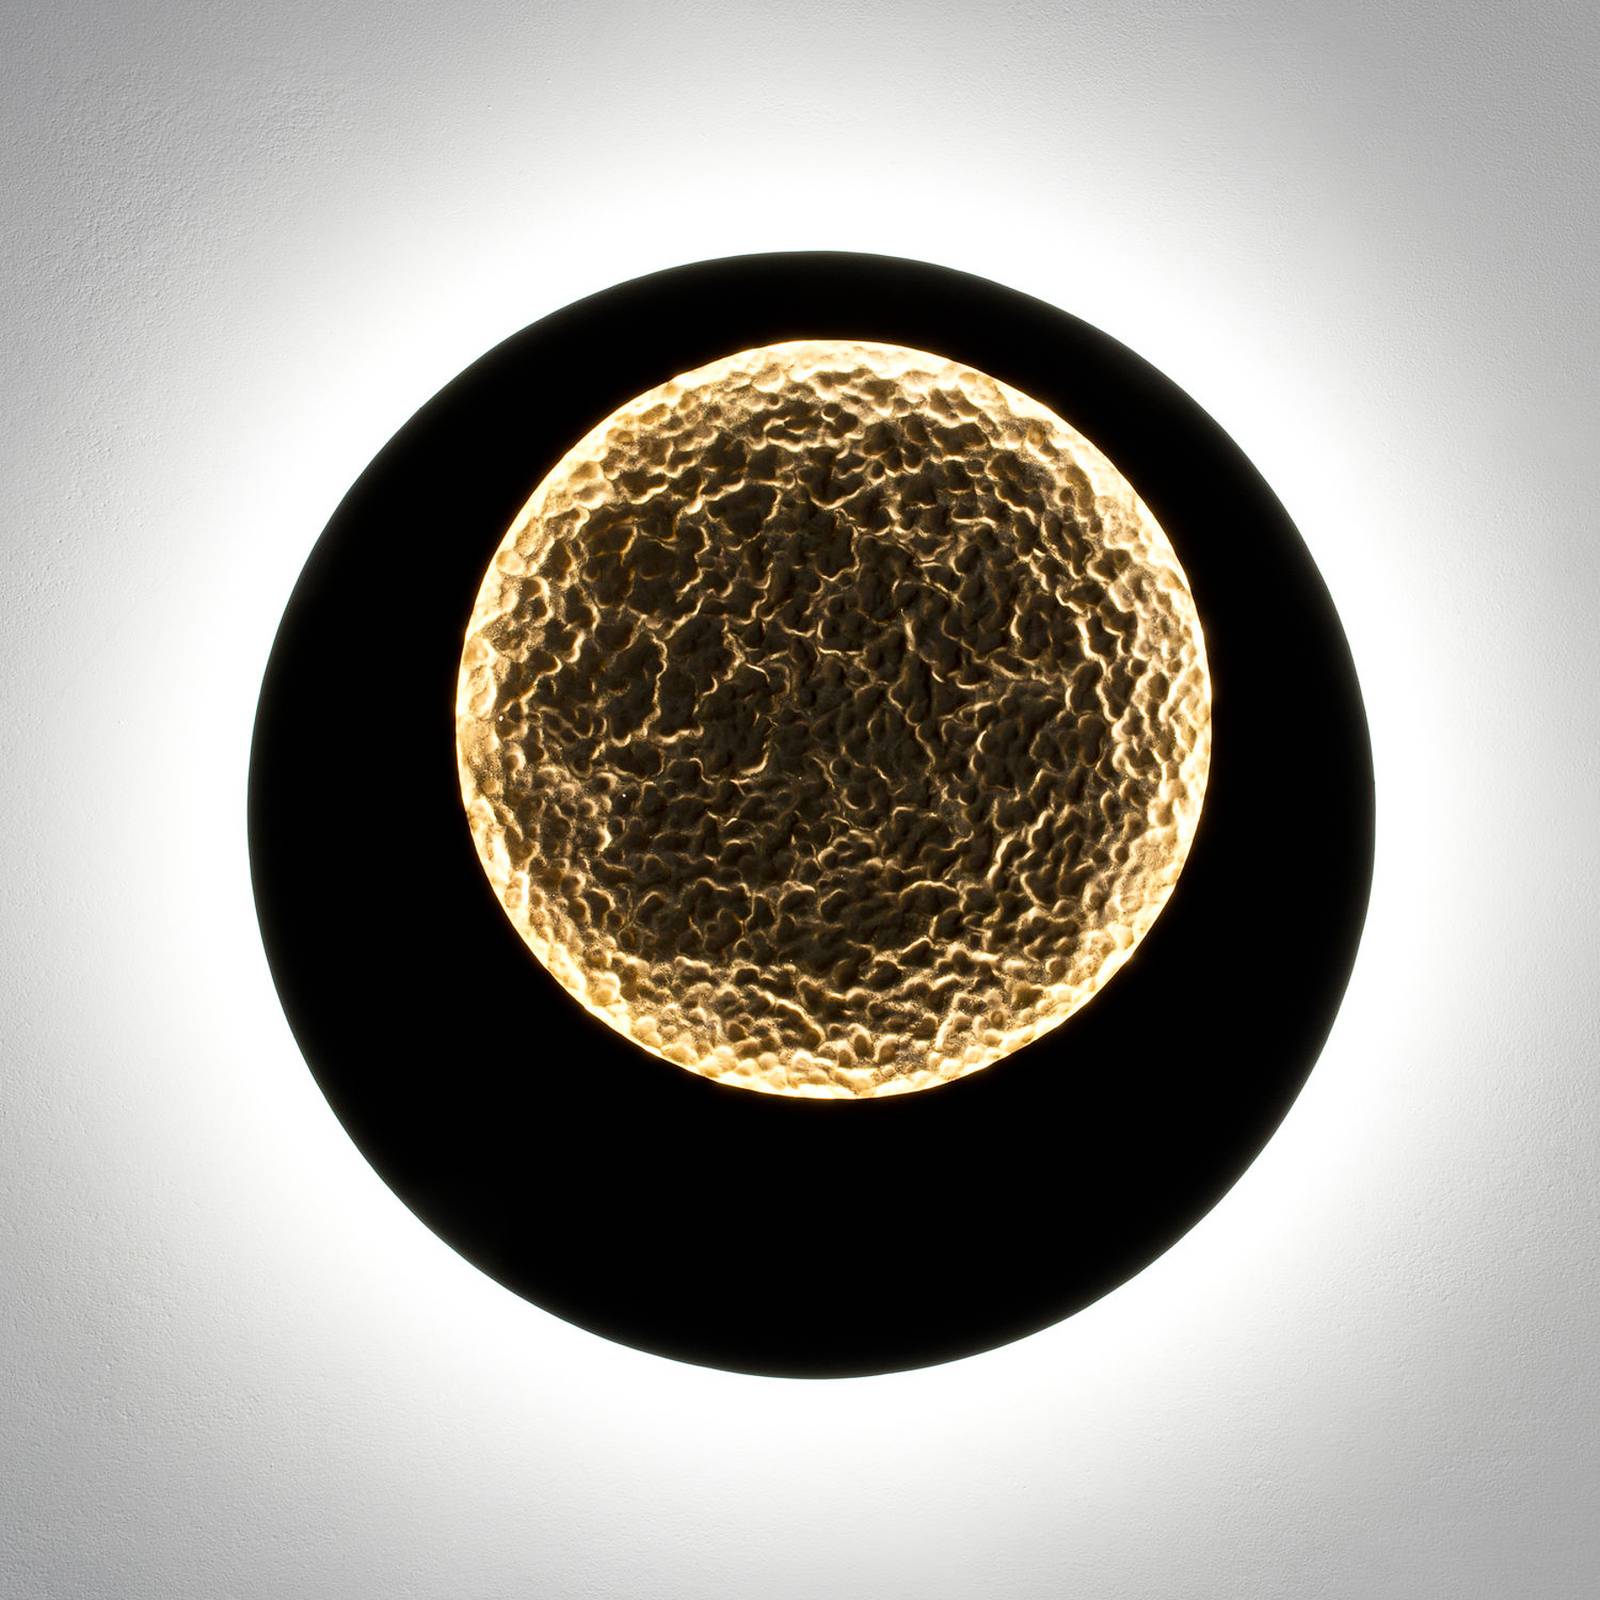 Holländer plenilunio led-es fali lámpa, barna-fekete-arany színű, 60 cm-es